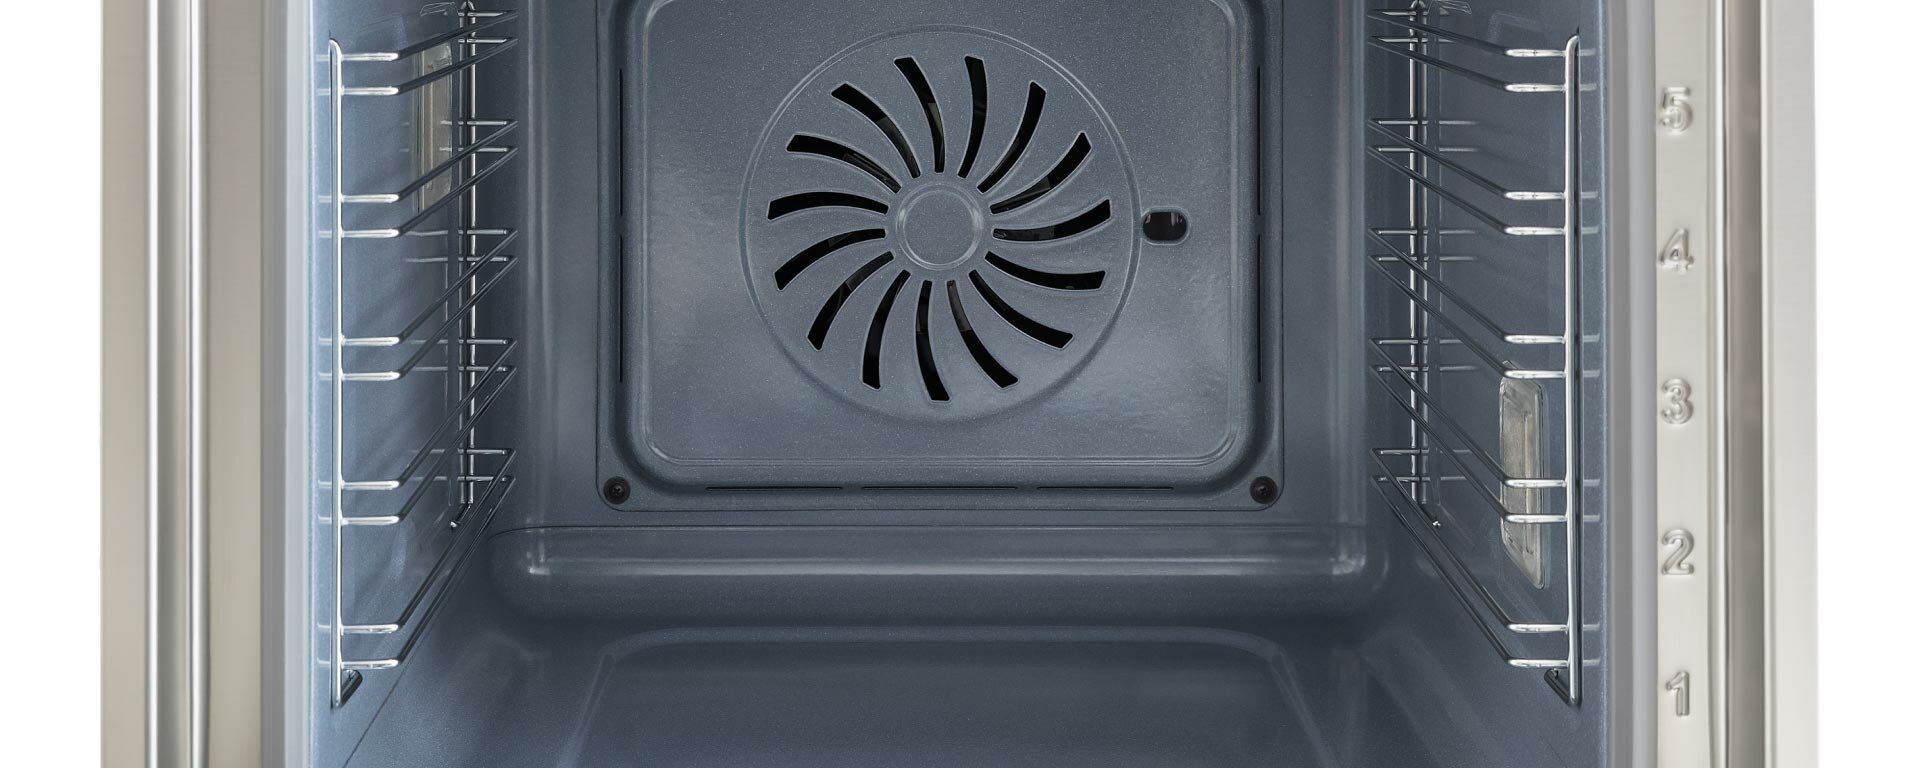 F6011MODVPTC Электрический встраиваемый духовой шкаф Bertazzoni, с пиролизом, функцией пара Total steam и полностью сенсорным дисплеем (TFT), 60 см Медь - фотография № 7